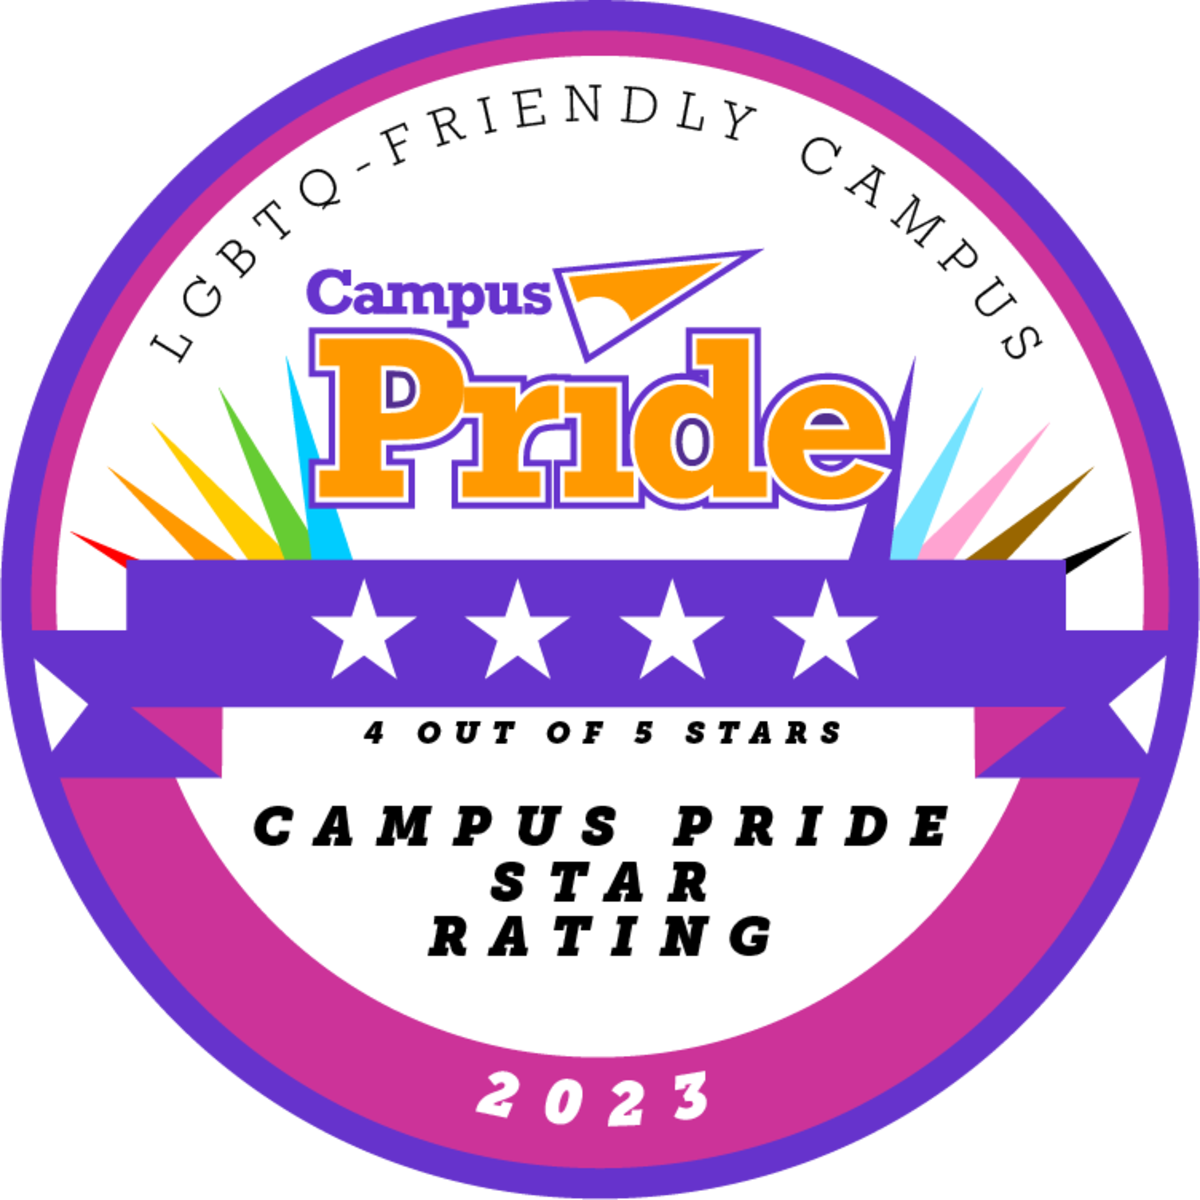 Campus Pride 4 Star Rating